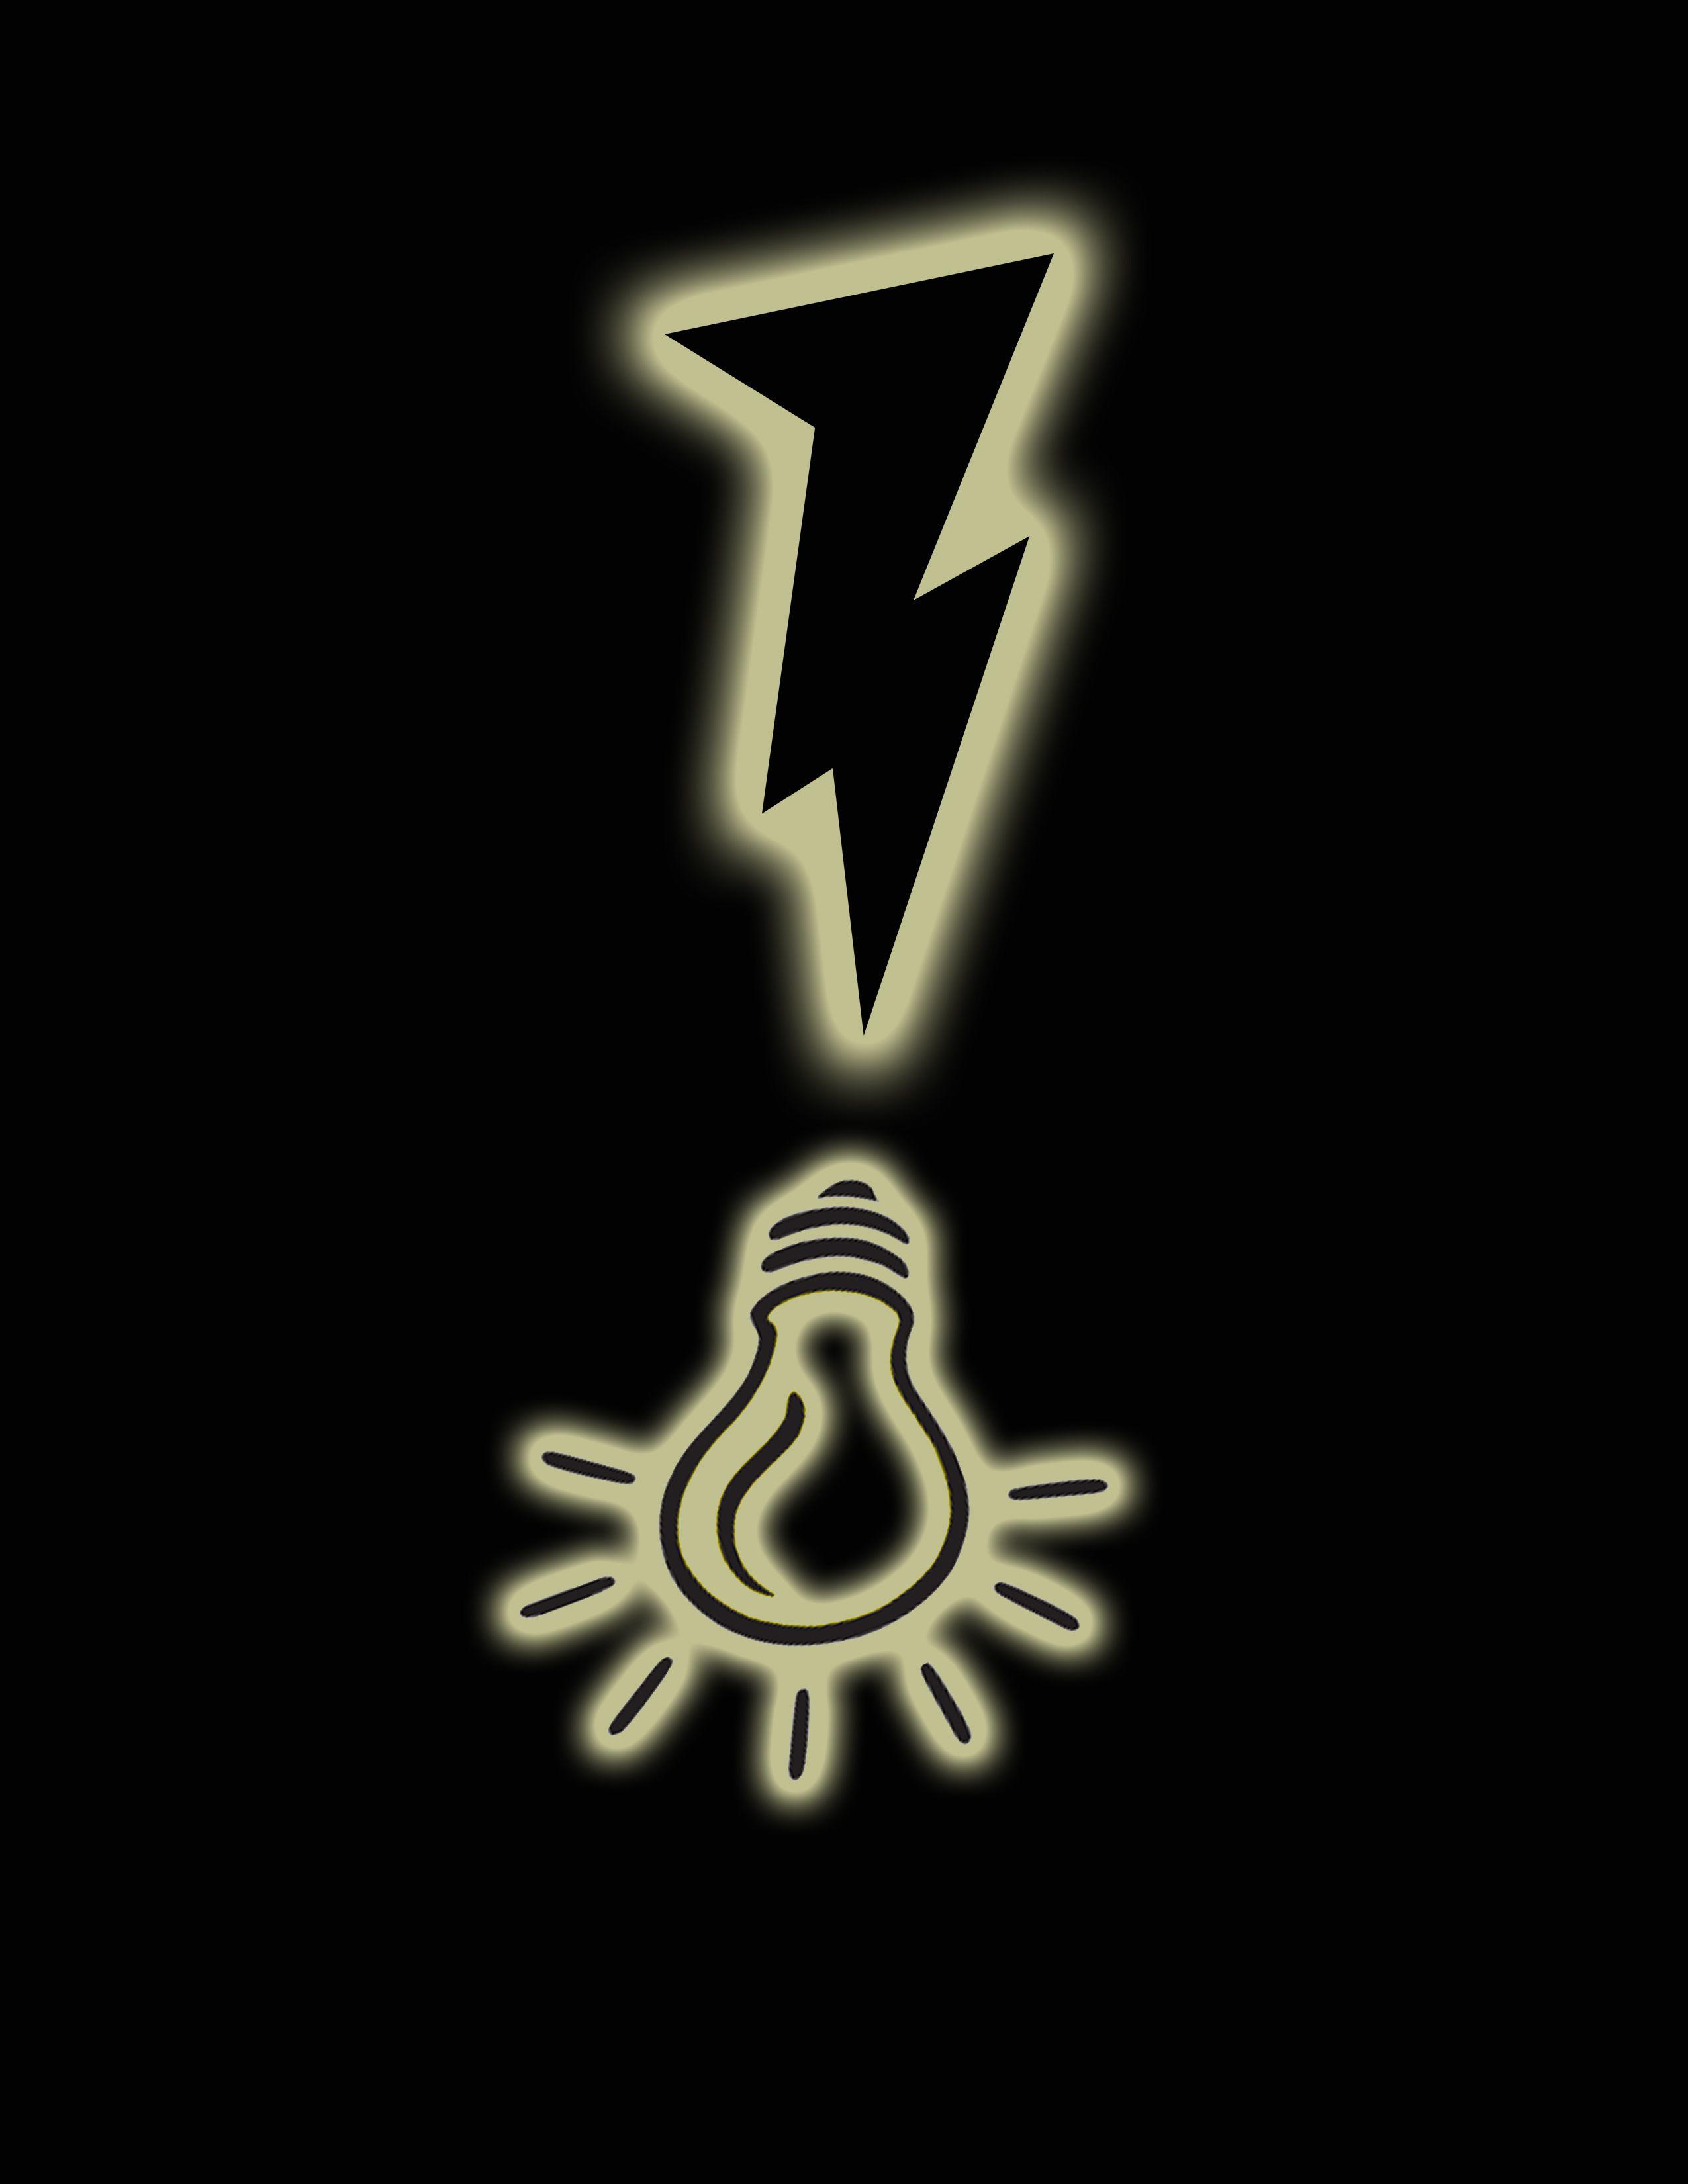 Blackout Logo - I BLACKOUT AGAINST POWER HIKE! | FREE ZONE